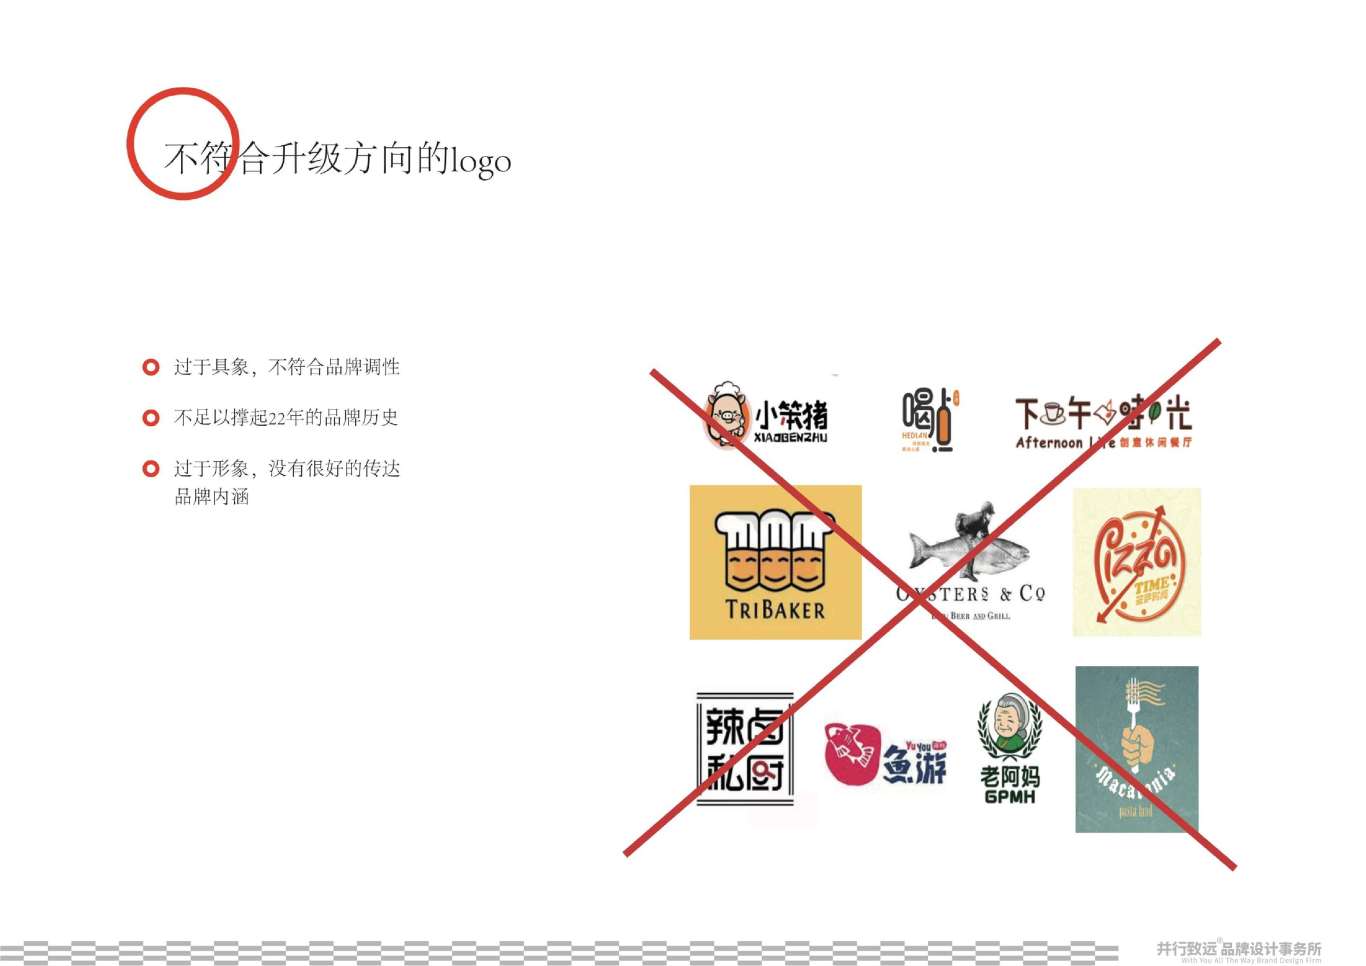 天津百餃園logo升級設計圖9